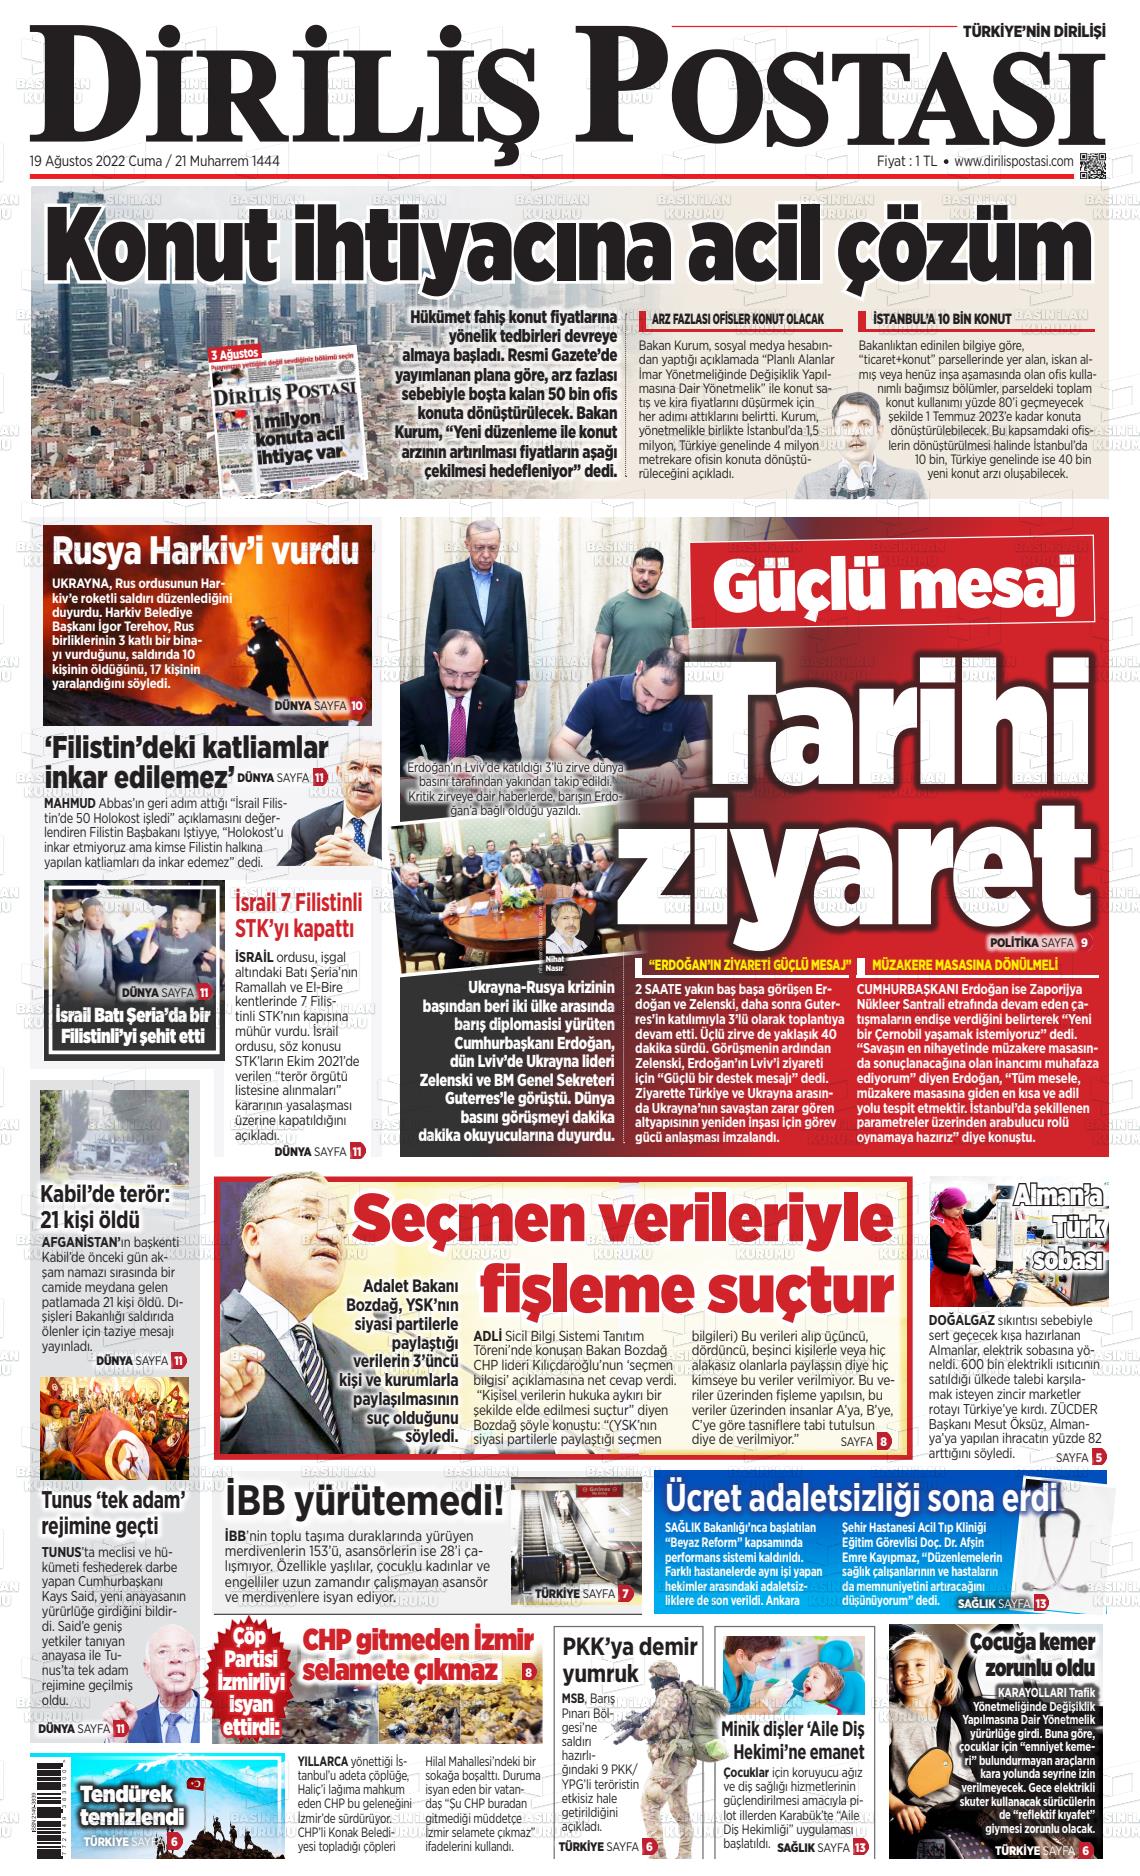 19 Ağustos 2022 Diriliş Postası Gazete Manşeti